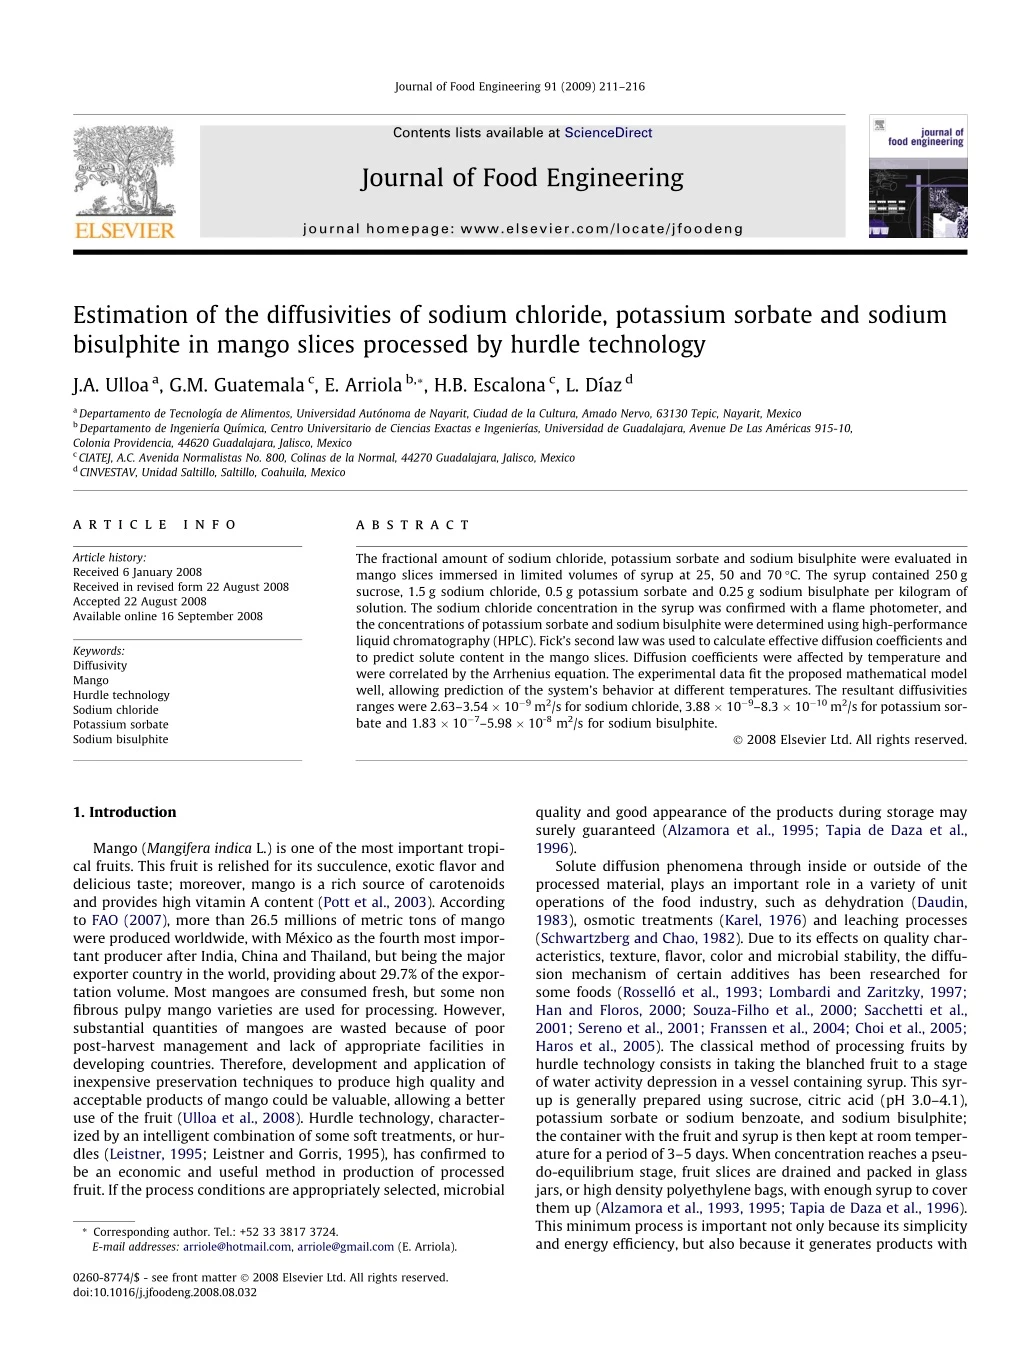 journal of food engineering 91 2009 211 216